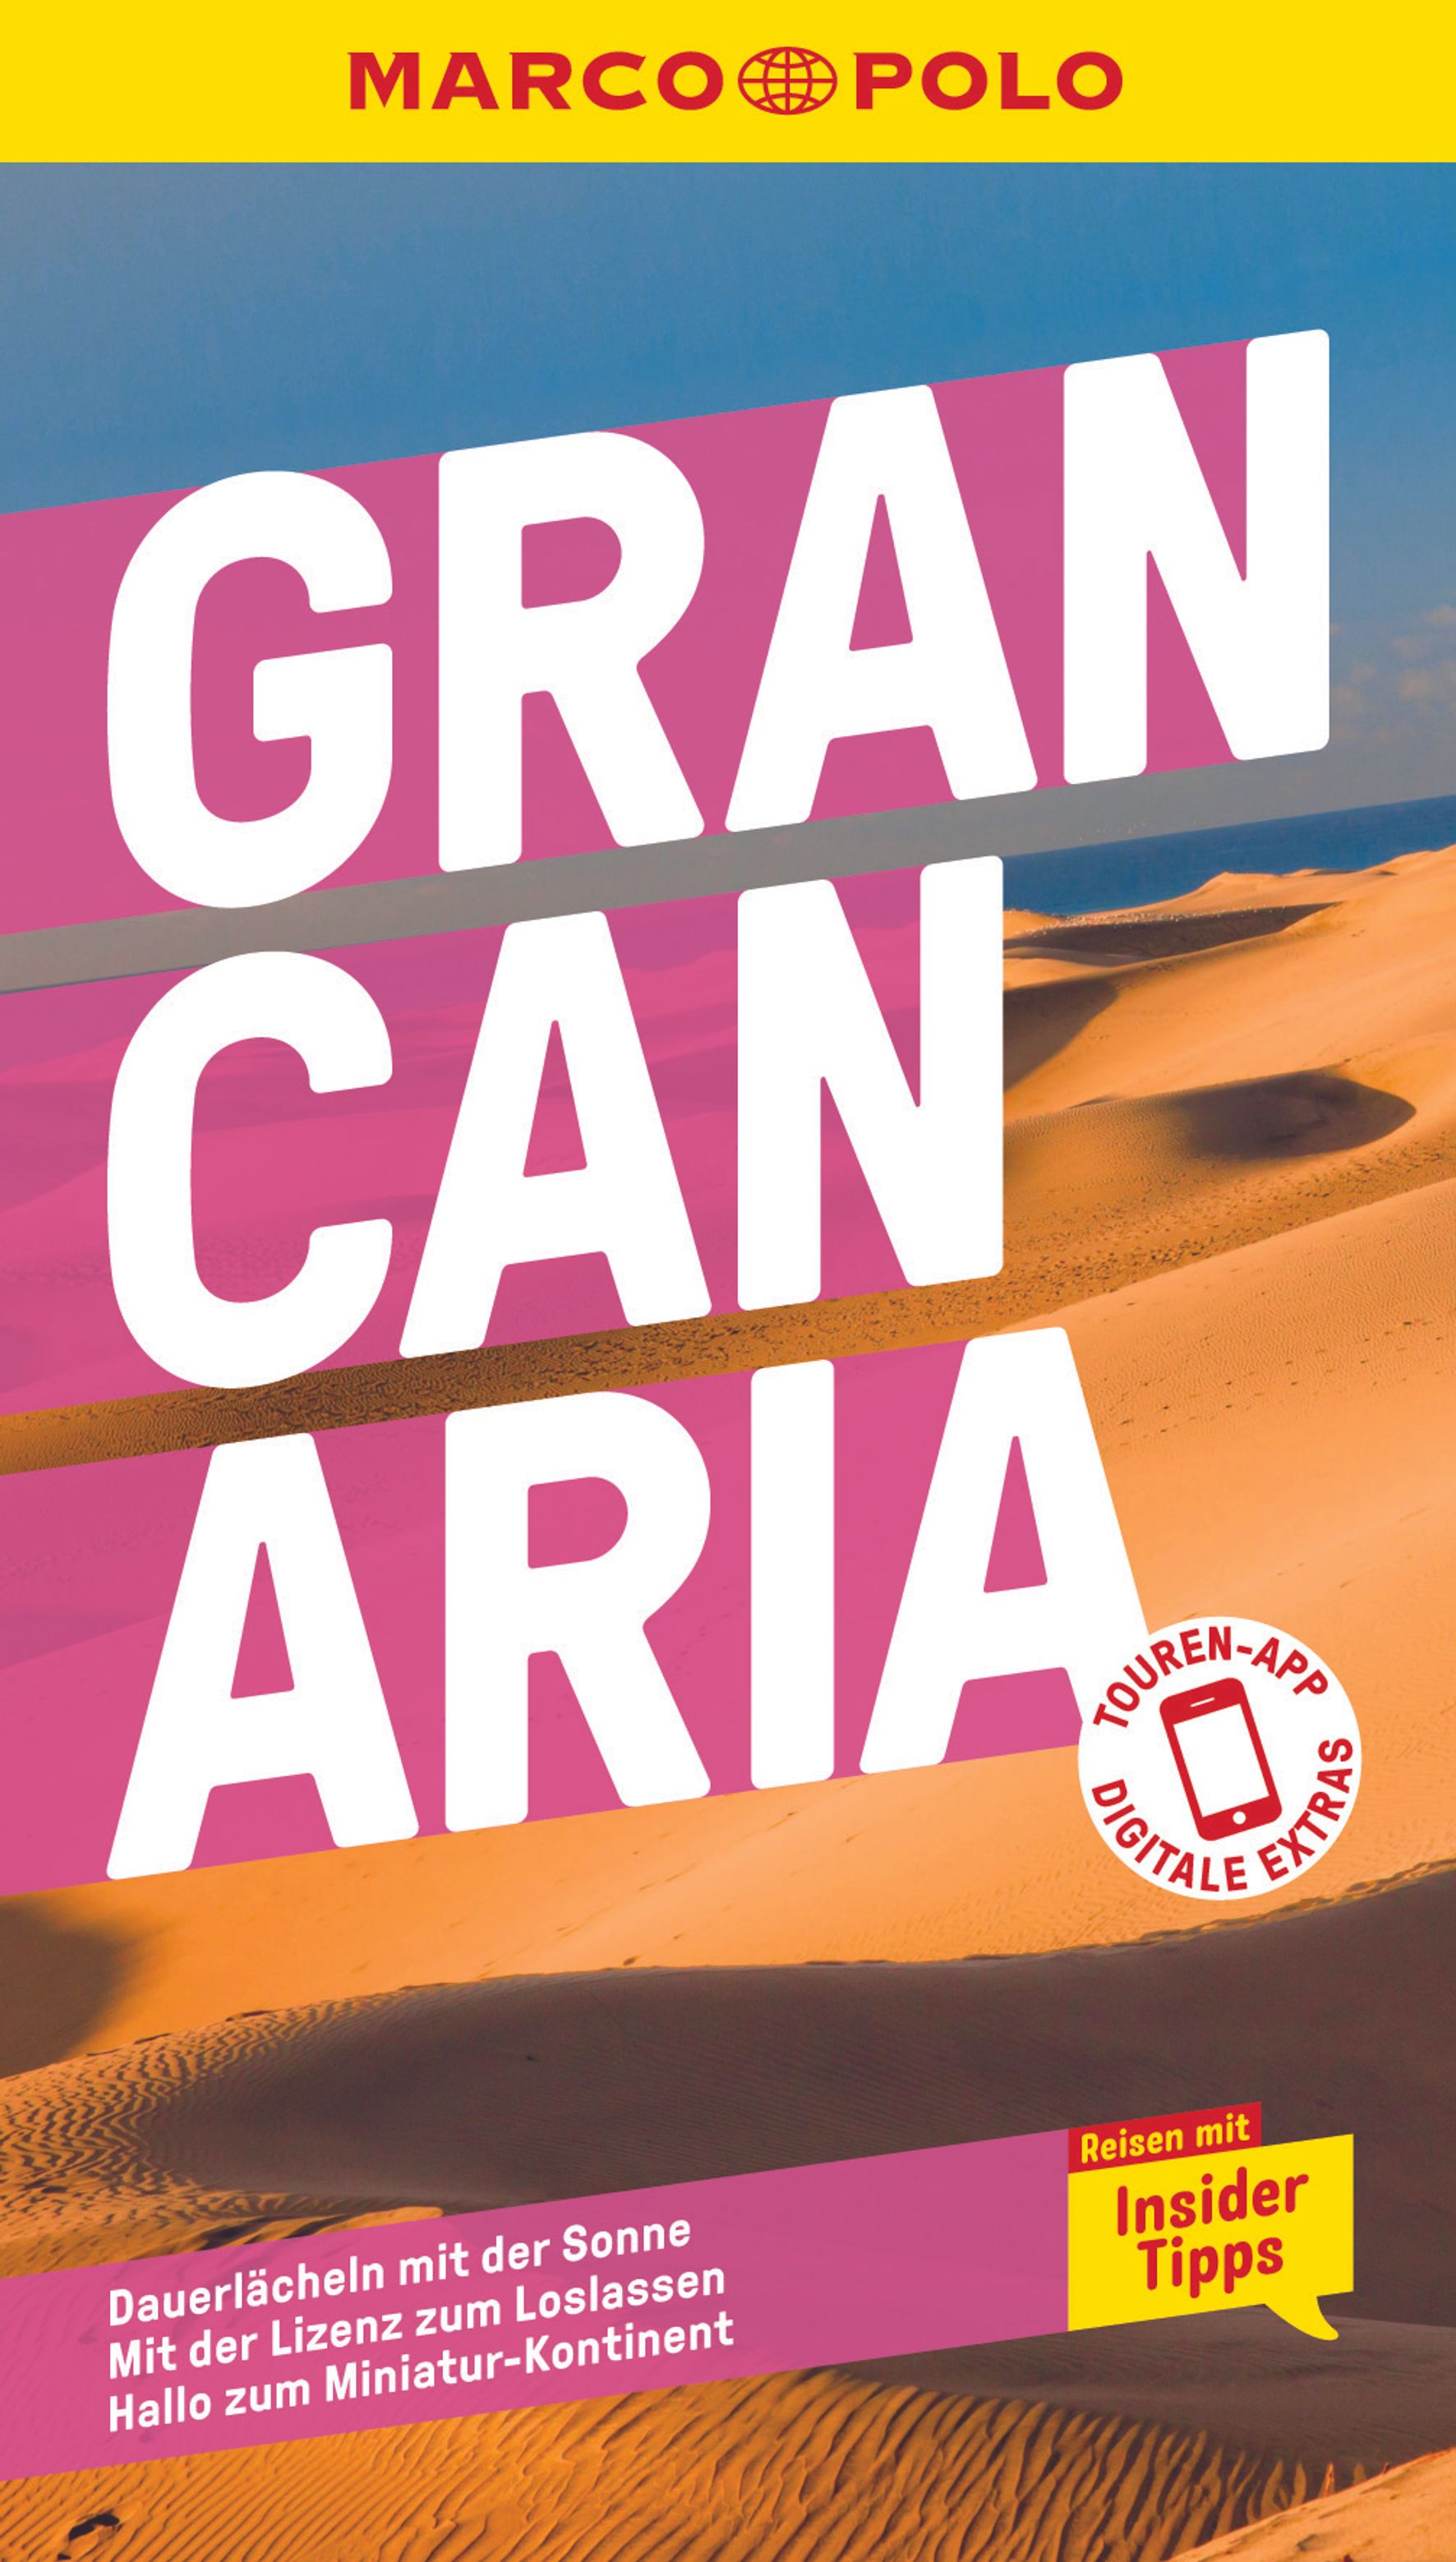 MAIRDUMONT Gran Canaria